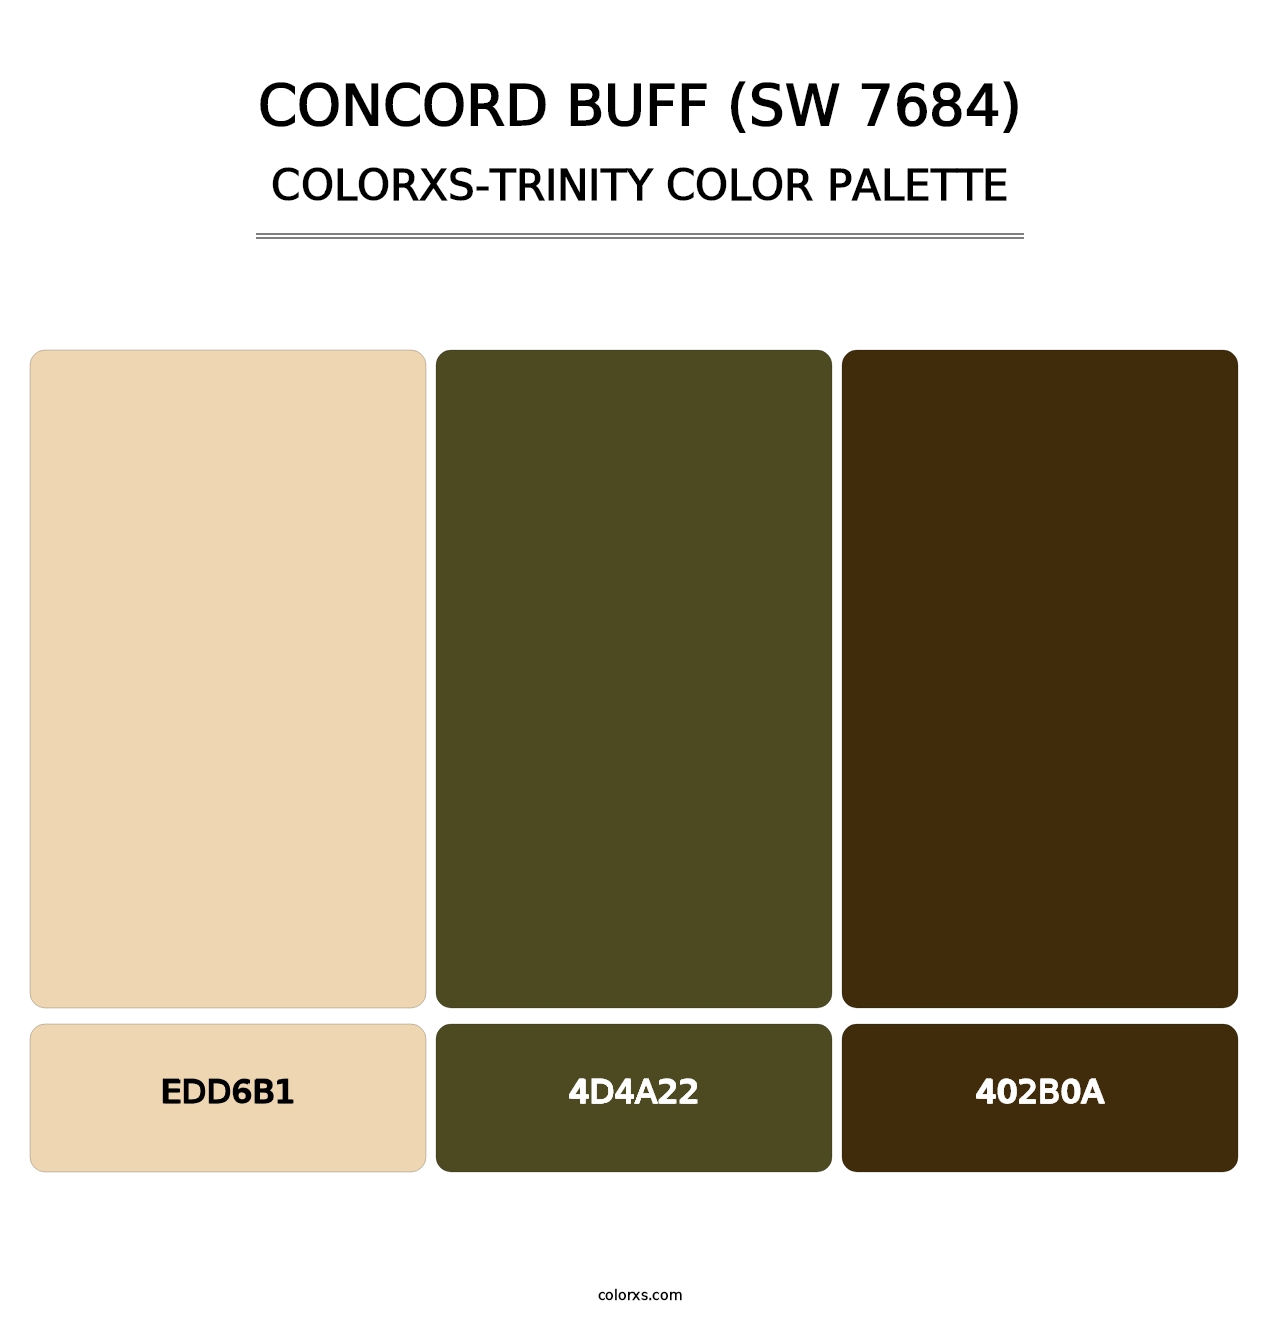 Concord Buff (SW 7684) - Colorxs Trinity Palette